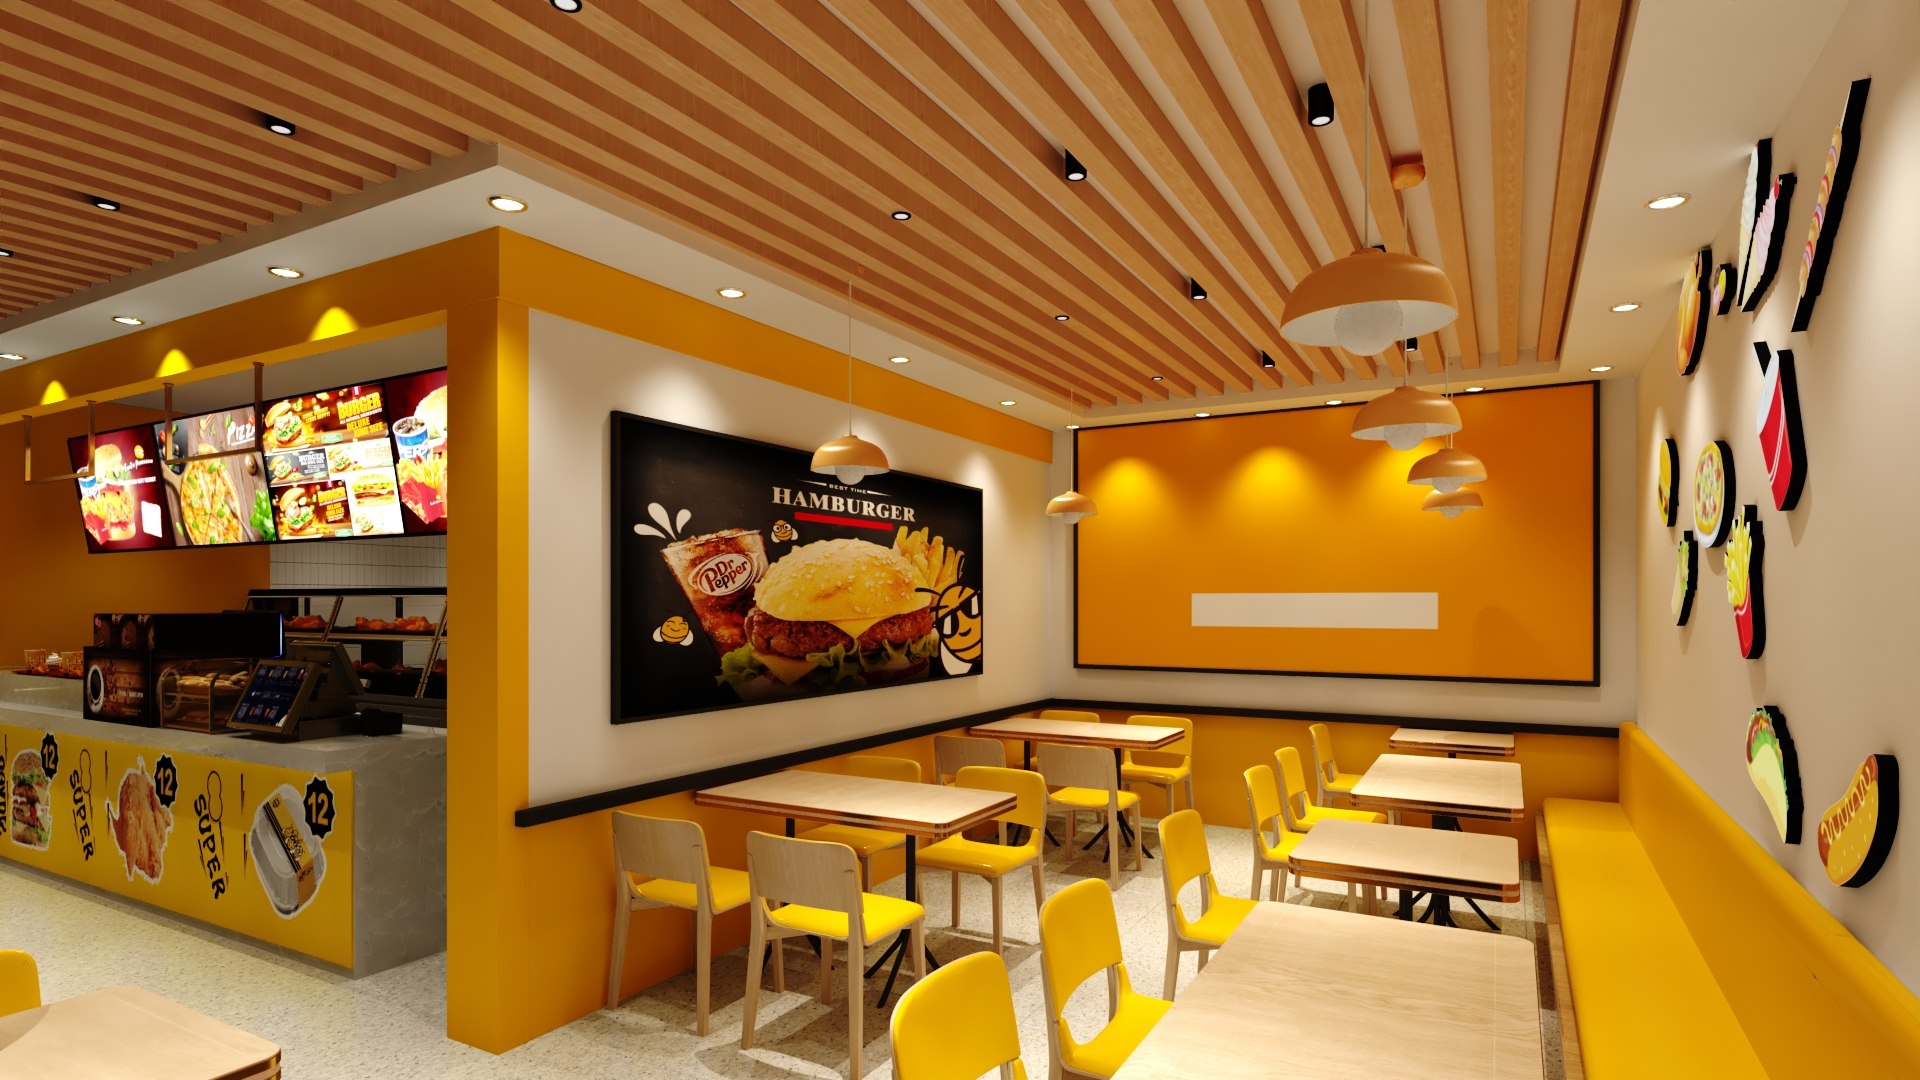 3D Burger Restaurant model - TurboSquid 2110981